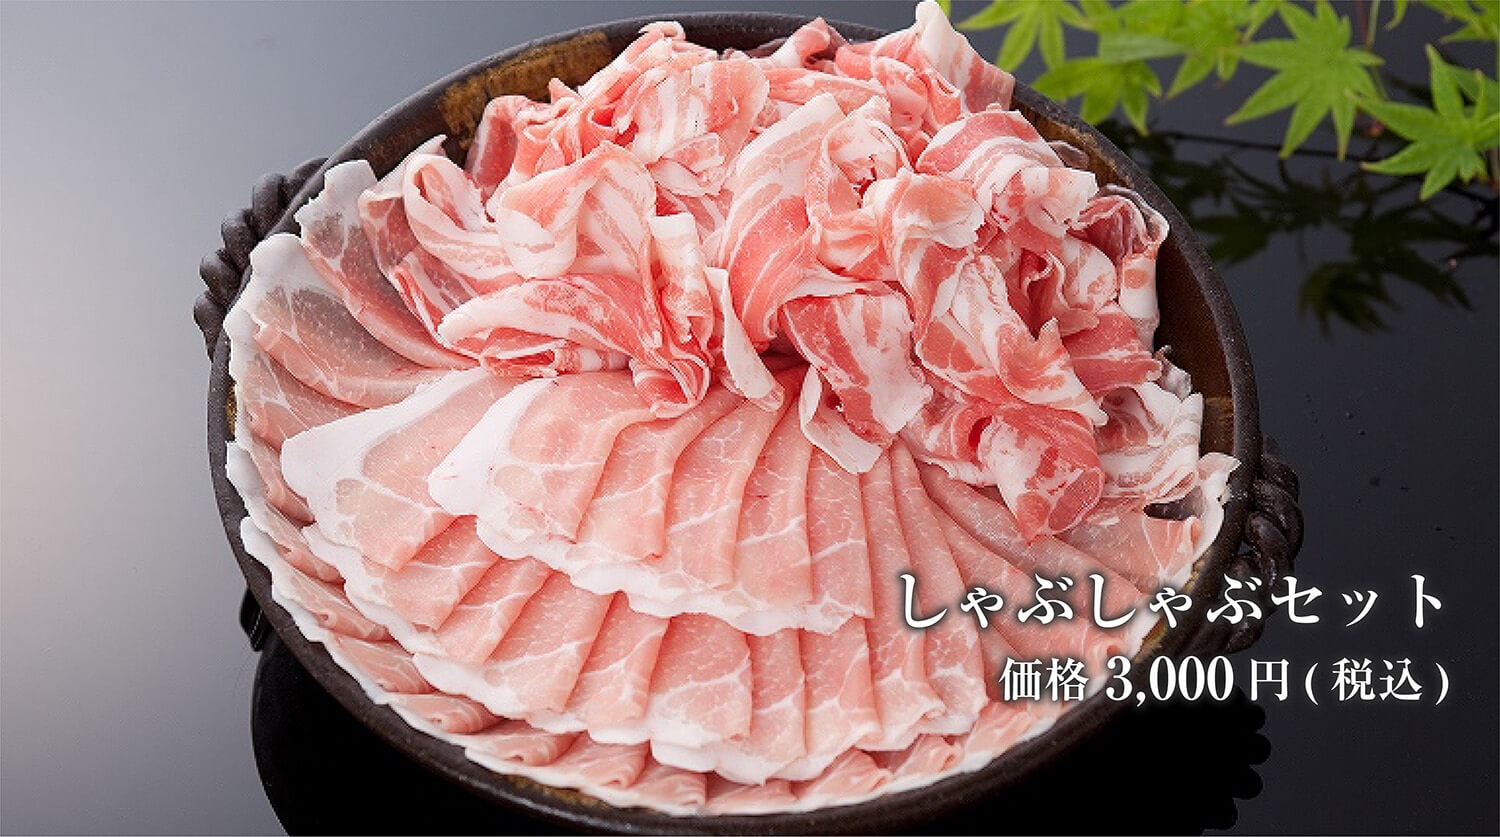 糸島の・福岡のおいしい豚肉・伊都の宝